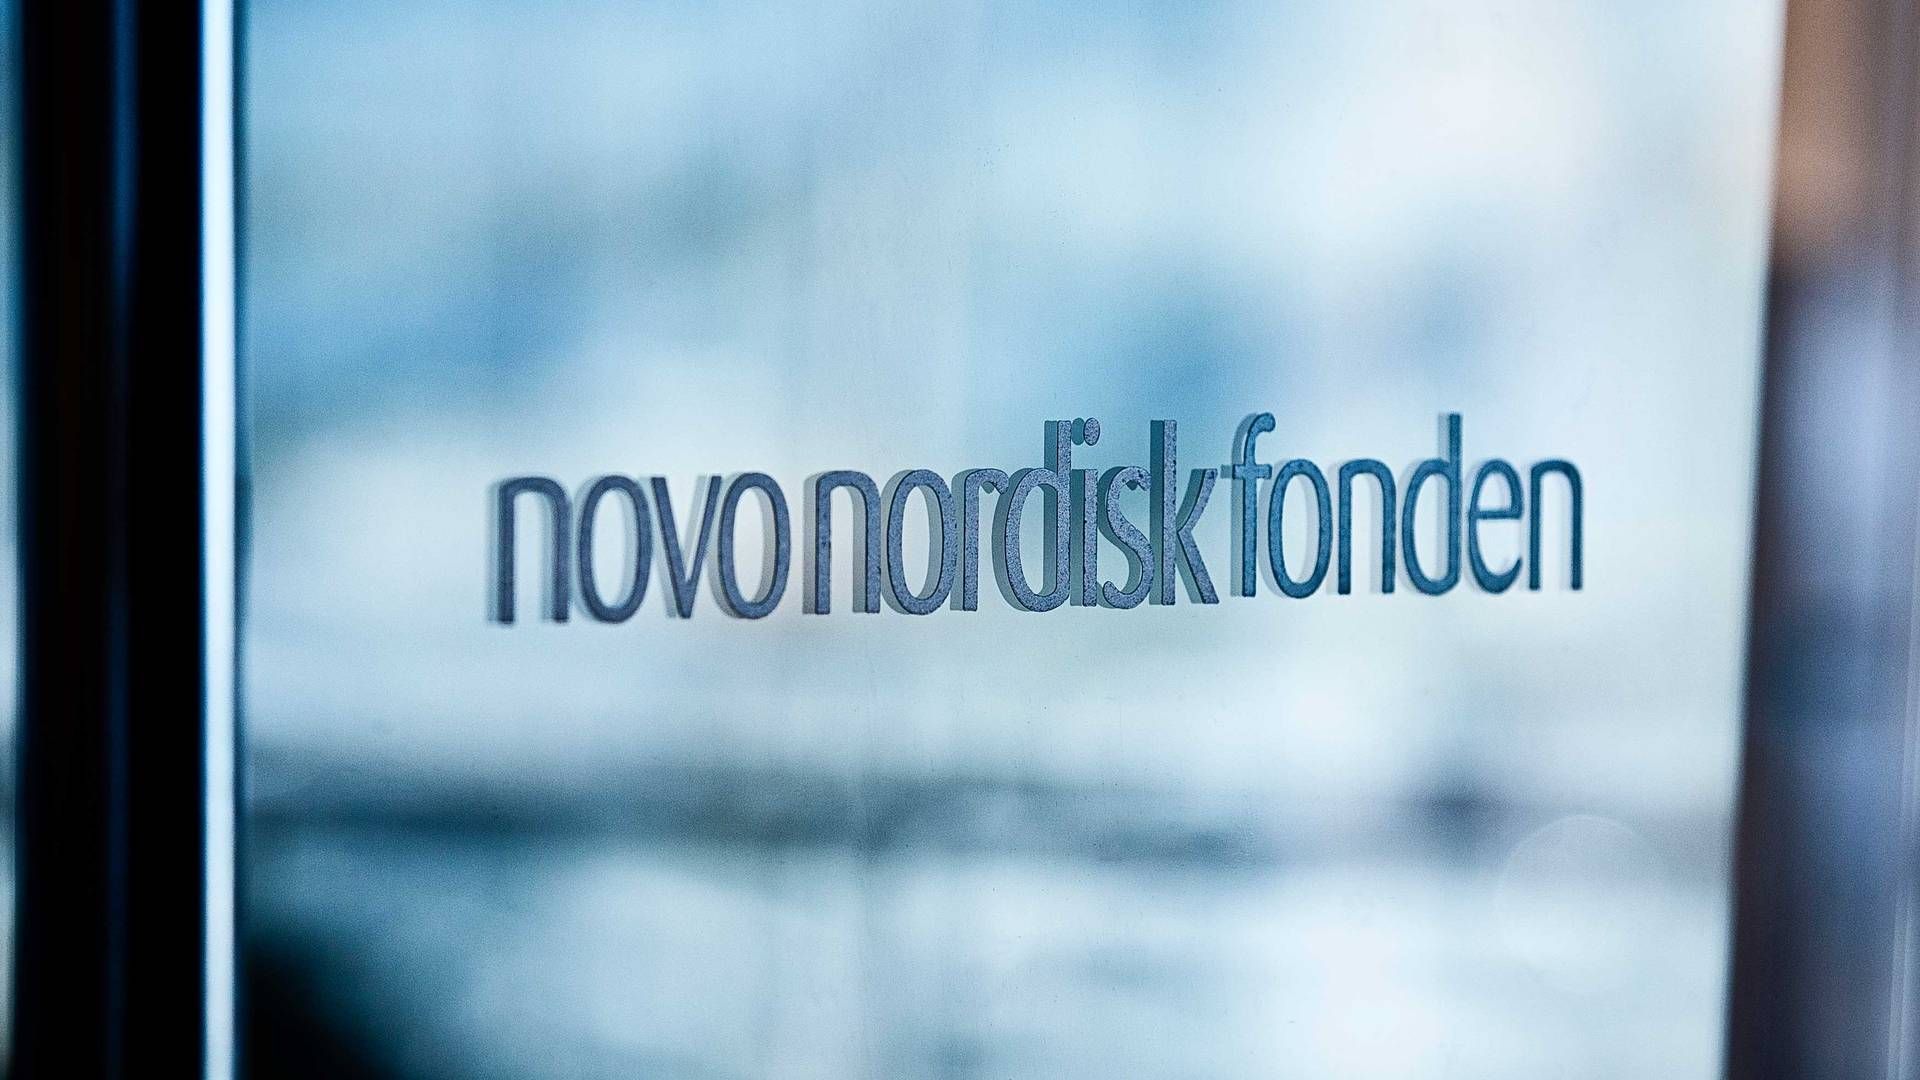 Forskere er bange for at miste støtten til deres forskning, hvis de udtaler sig kritisk om Novo Nordisk Fonden, skriver Frihedsbrevet. | Foto: Novo Nordisk Fonden / Pr